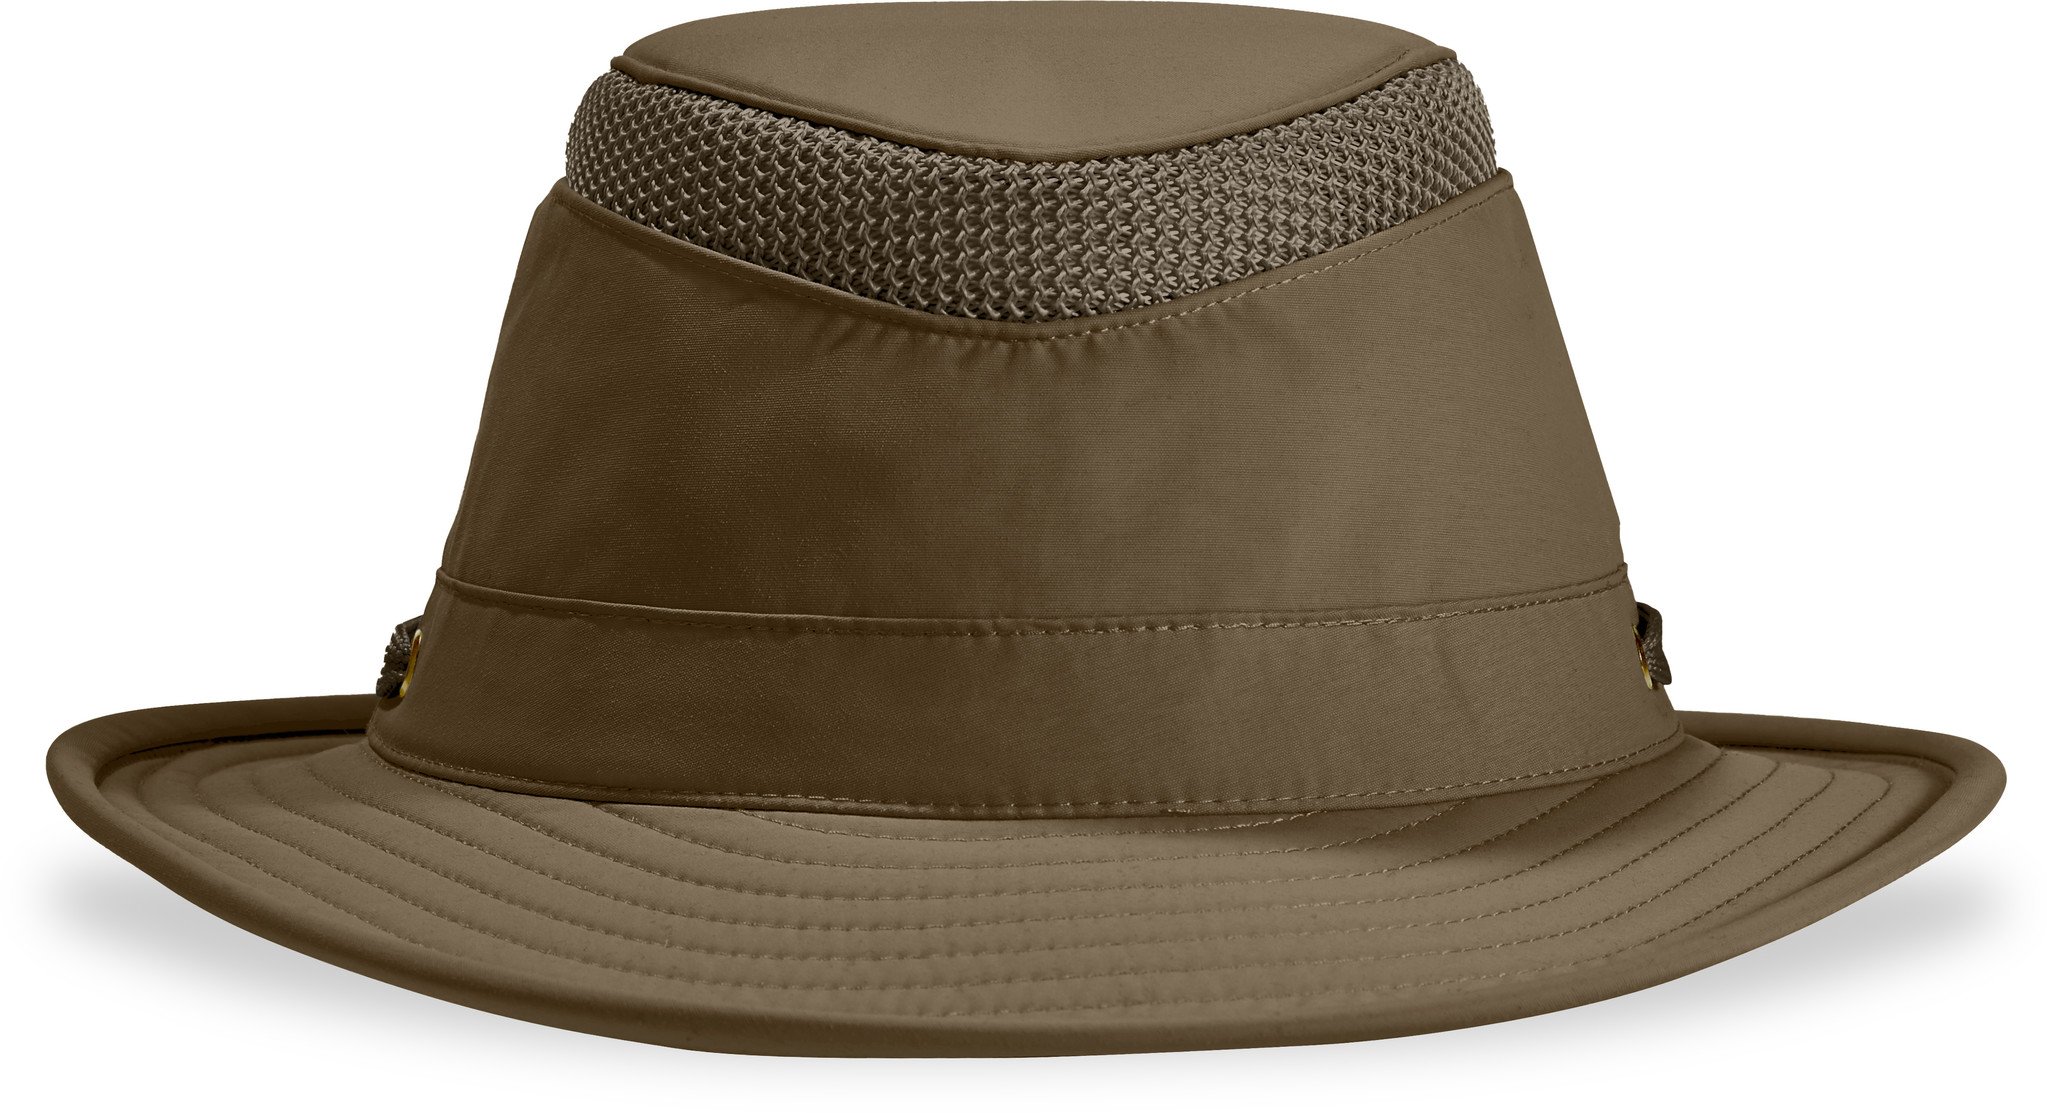 Tilley LTM5 Airflo Hat Olive / 7 3/8